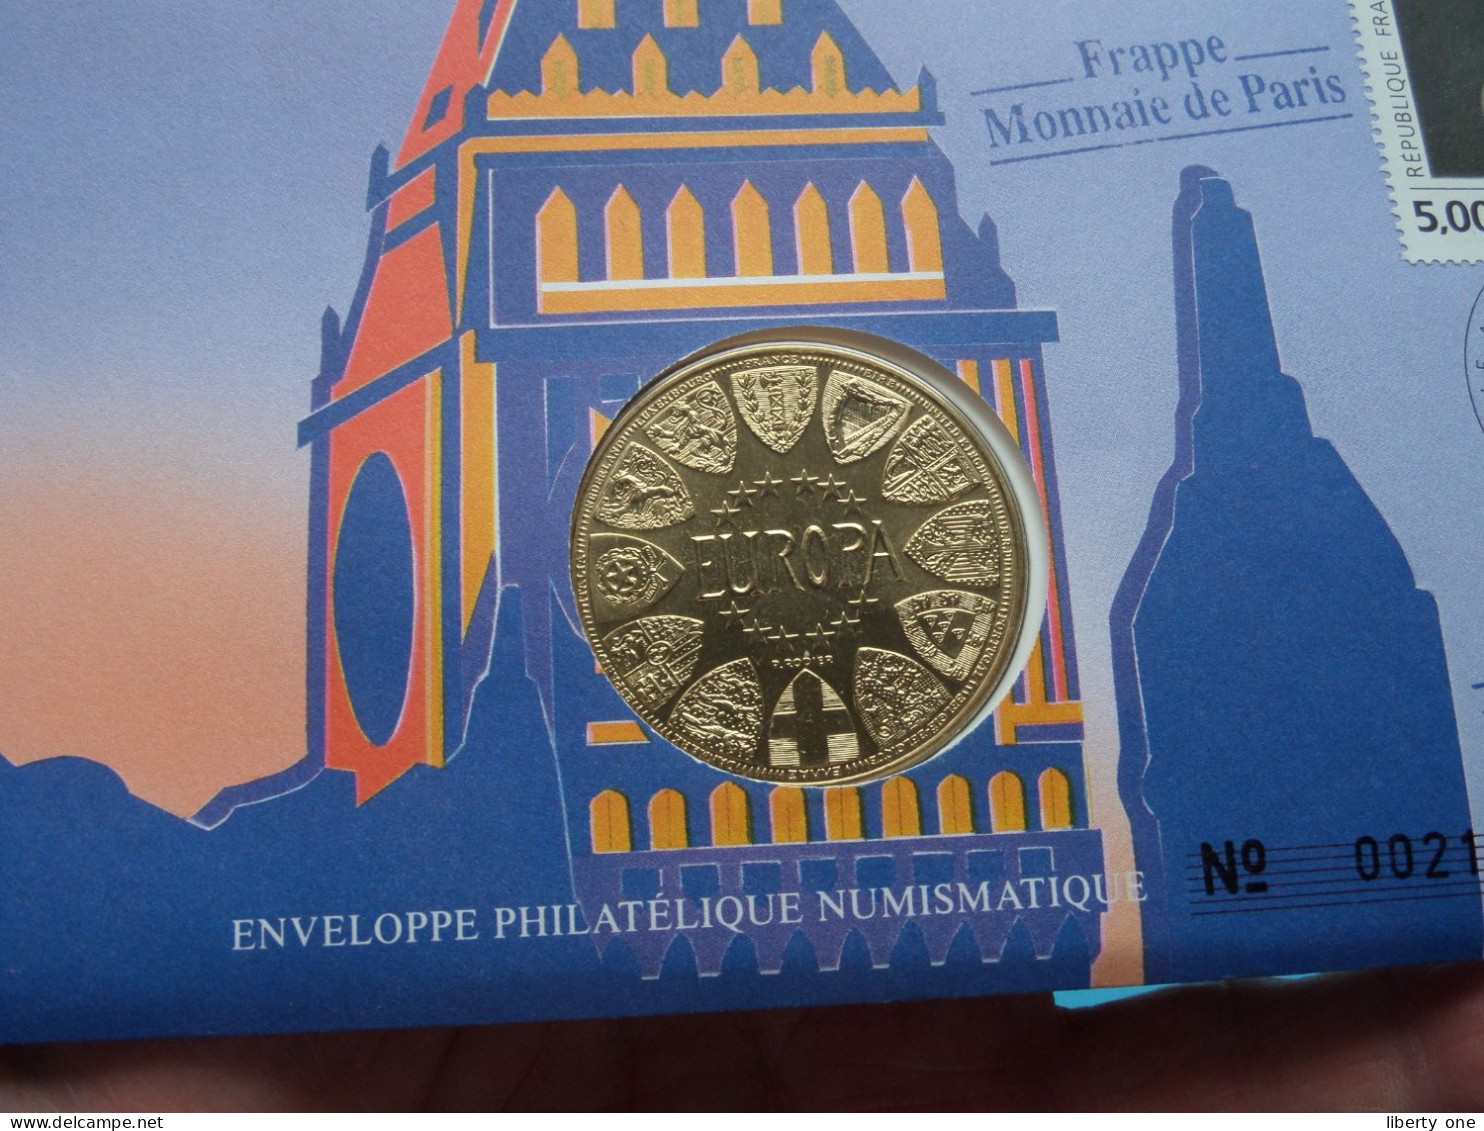 EUROPA - GRANDE BRETAGNE ( Voir Scans ) Enveloppe Numismatique Monnaie De Paris N° 00219 > 1990 > Numislettre ! - Monedas Elongadas (elongated Coins)